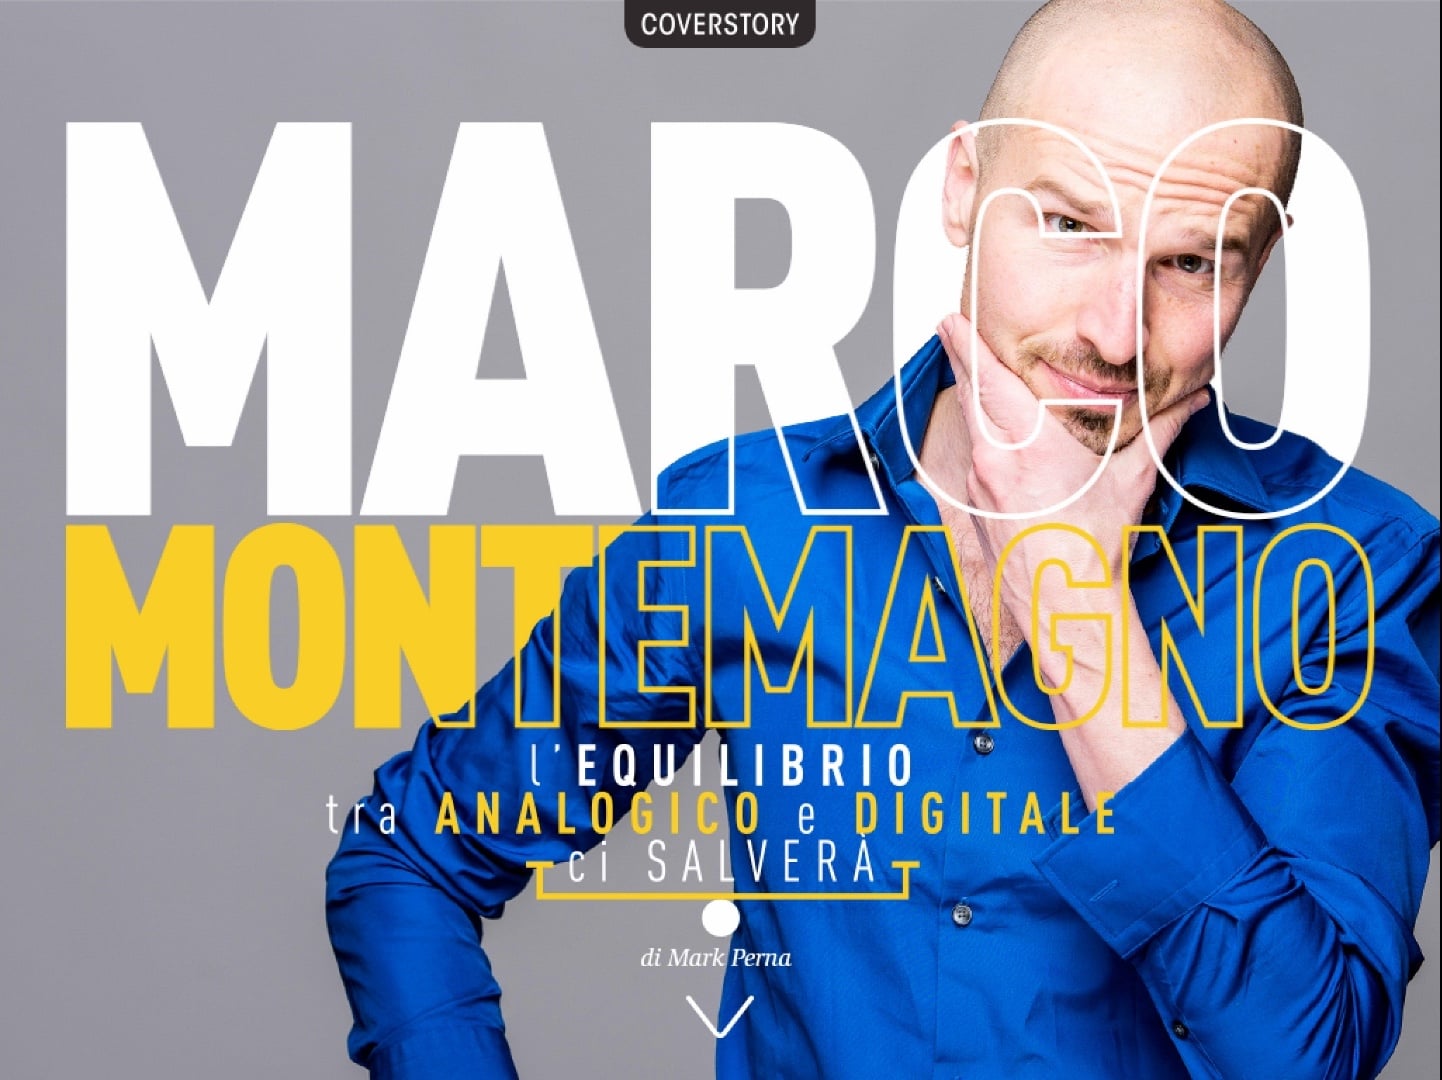 Youtech, il nuovo numero ha come CoverStory, Marco Monty Montemagno